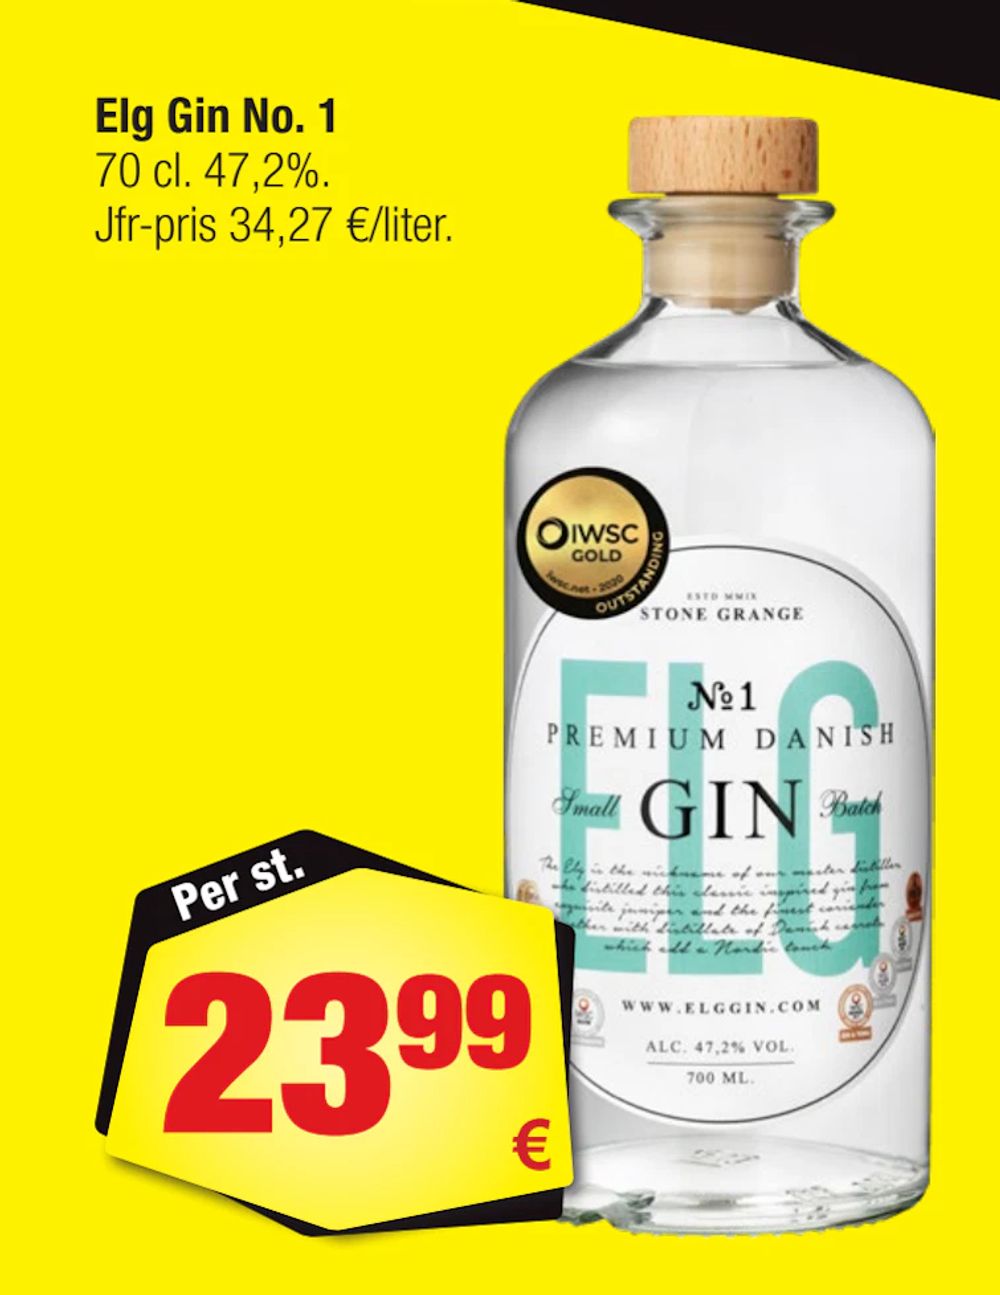 Erbjudanden på Elg Gin No. 1 från Calle för 23,99 €